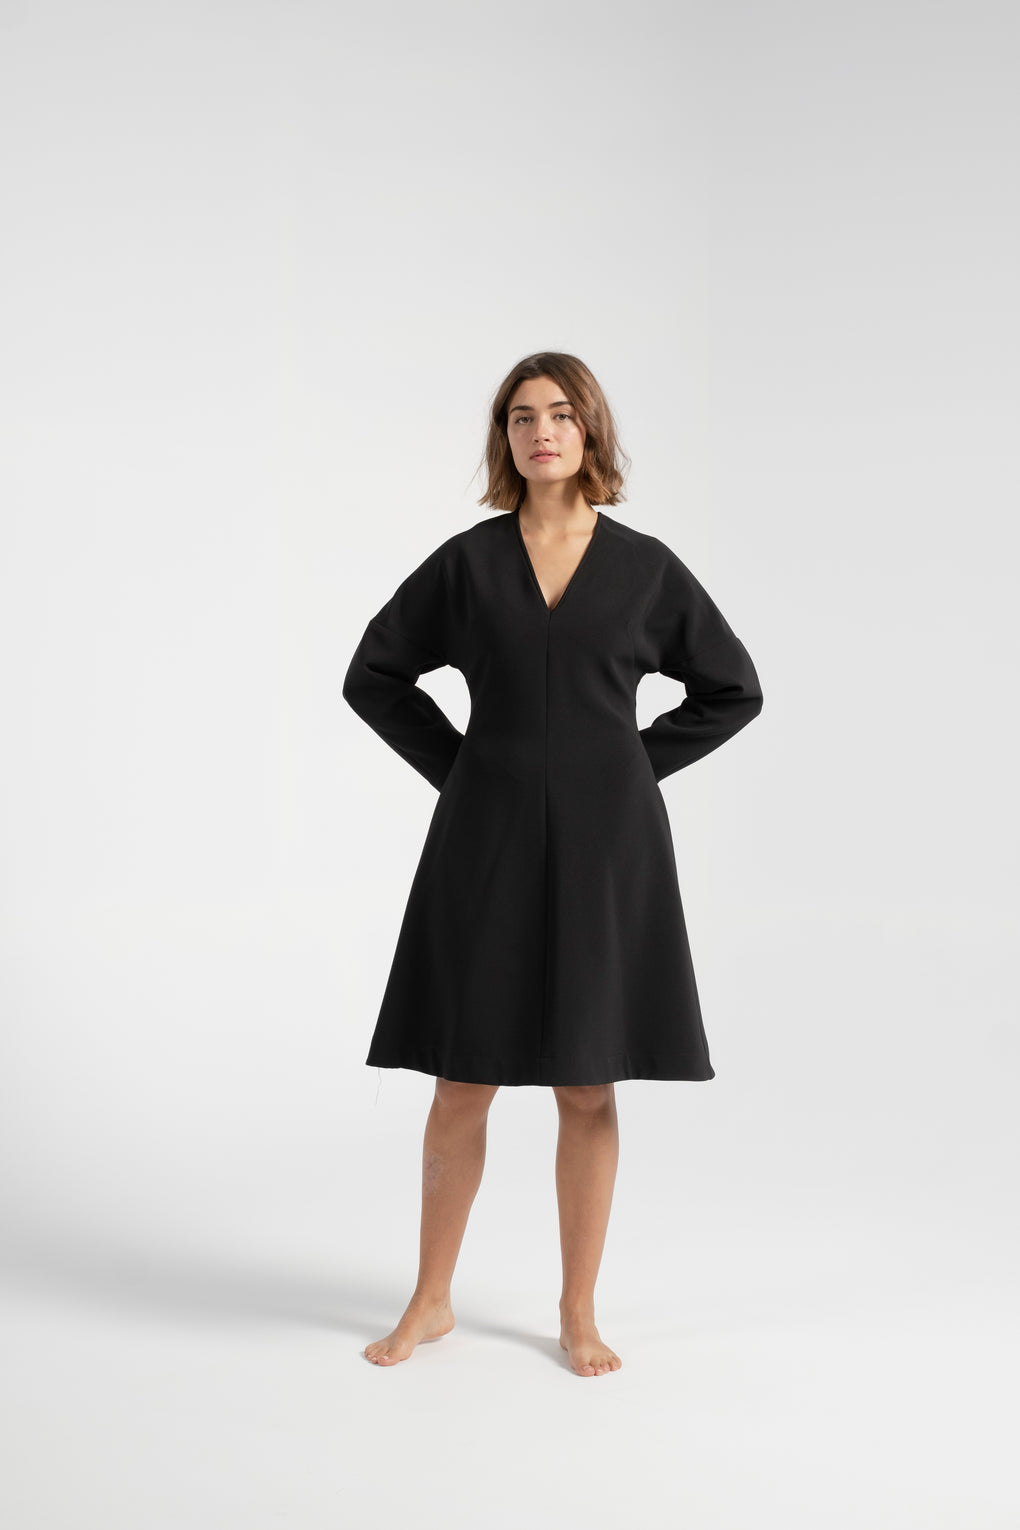 Nomia dolman sleeve dress-Nomia dress-black dress-long sleeve black dress-dolman sleeve dress-black fall dress-Idun-St. Paul